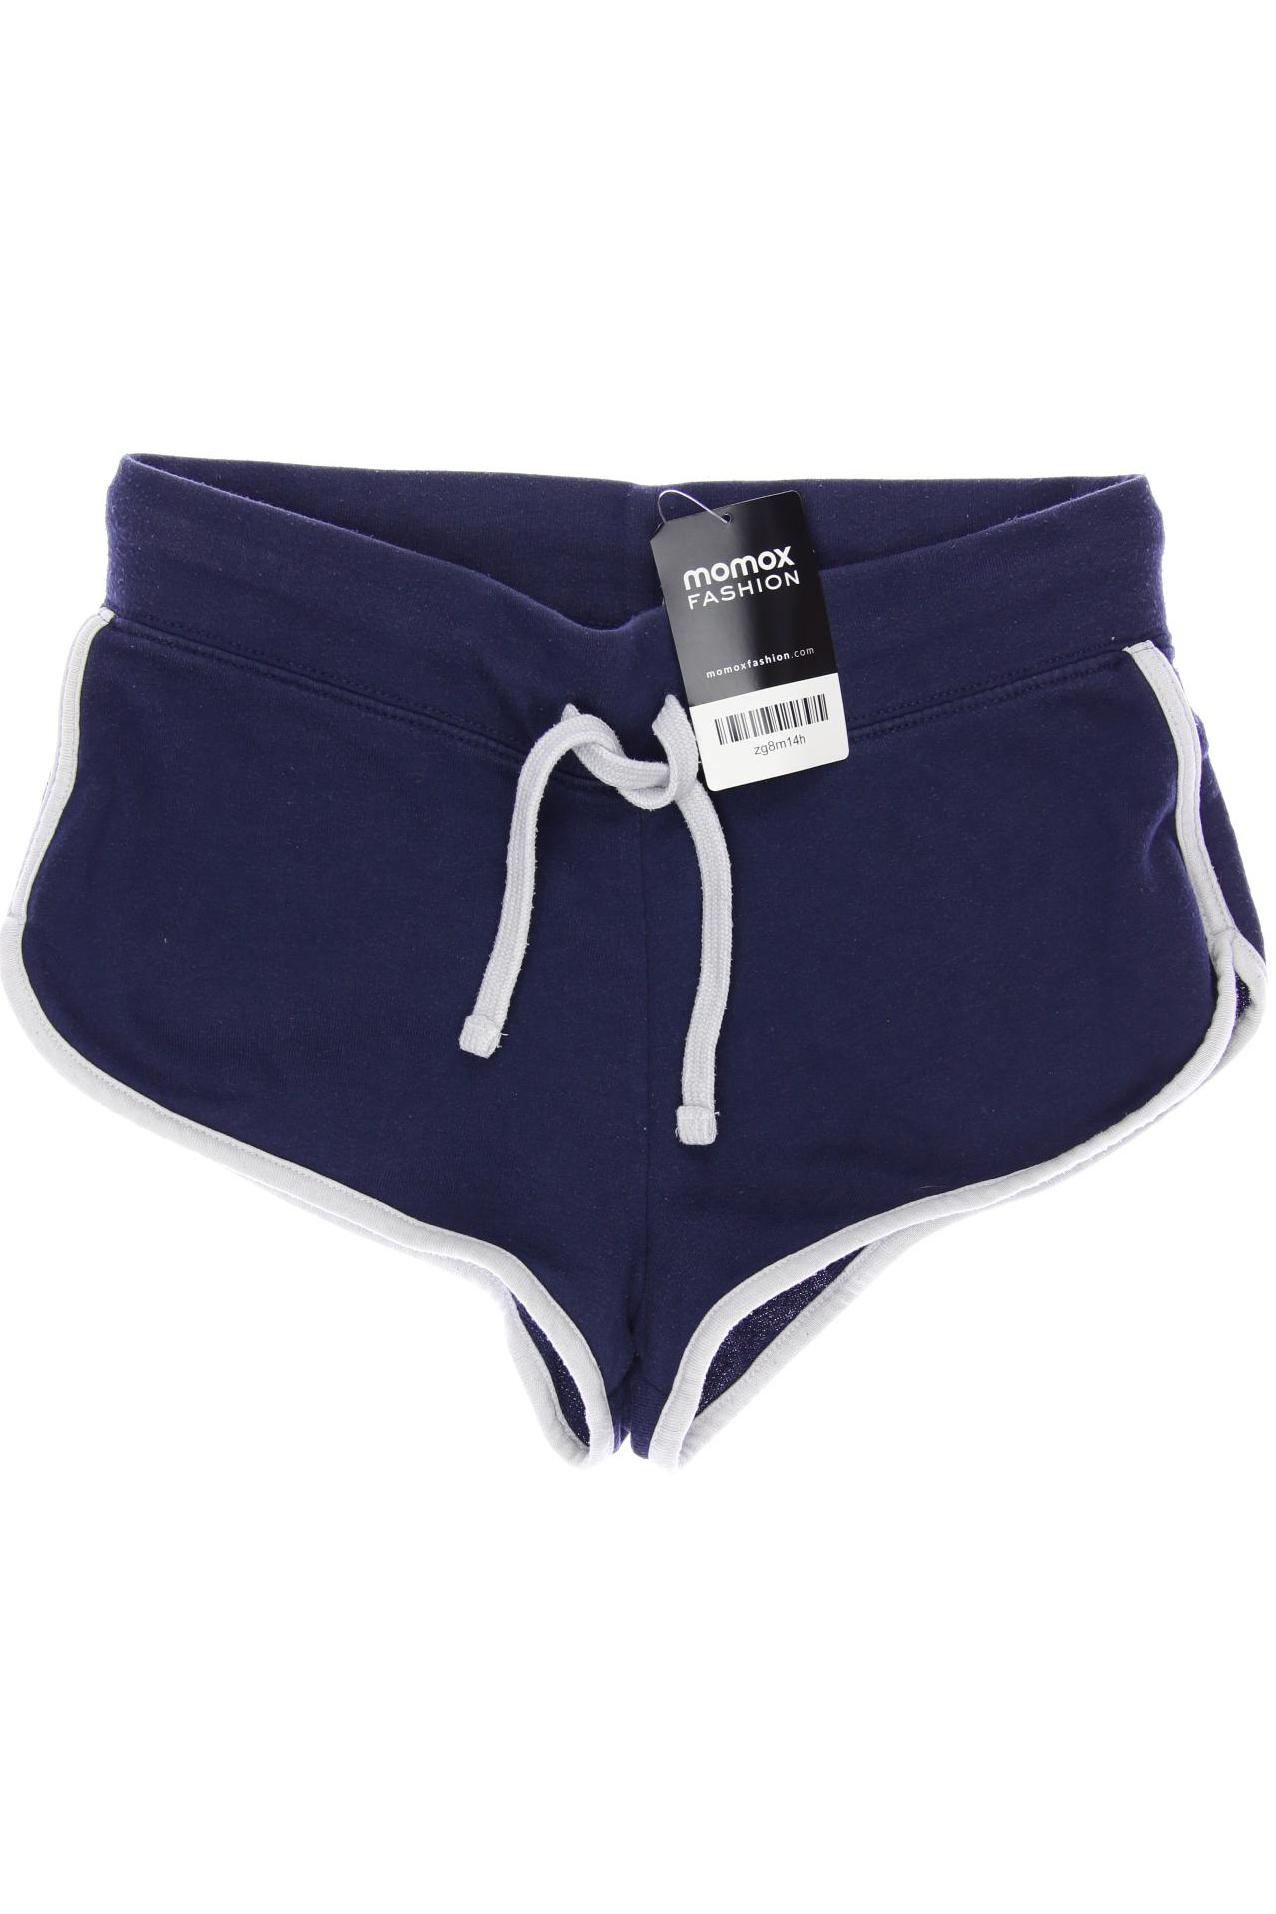 H&M Damen Shorts, blau, Gr. 34 von H&M